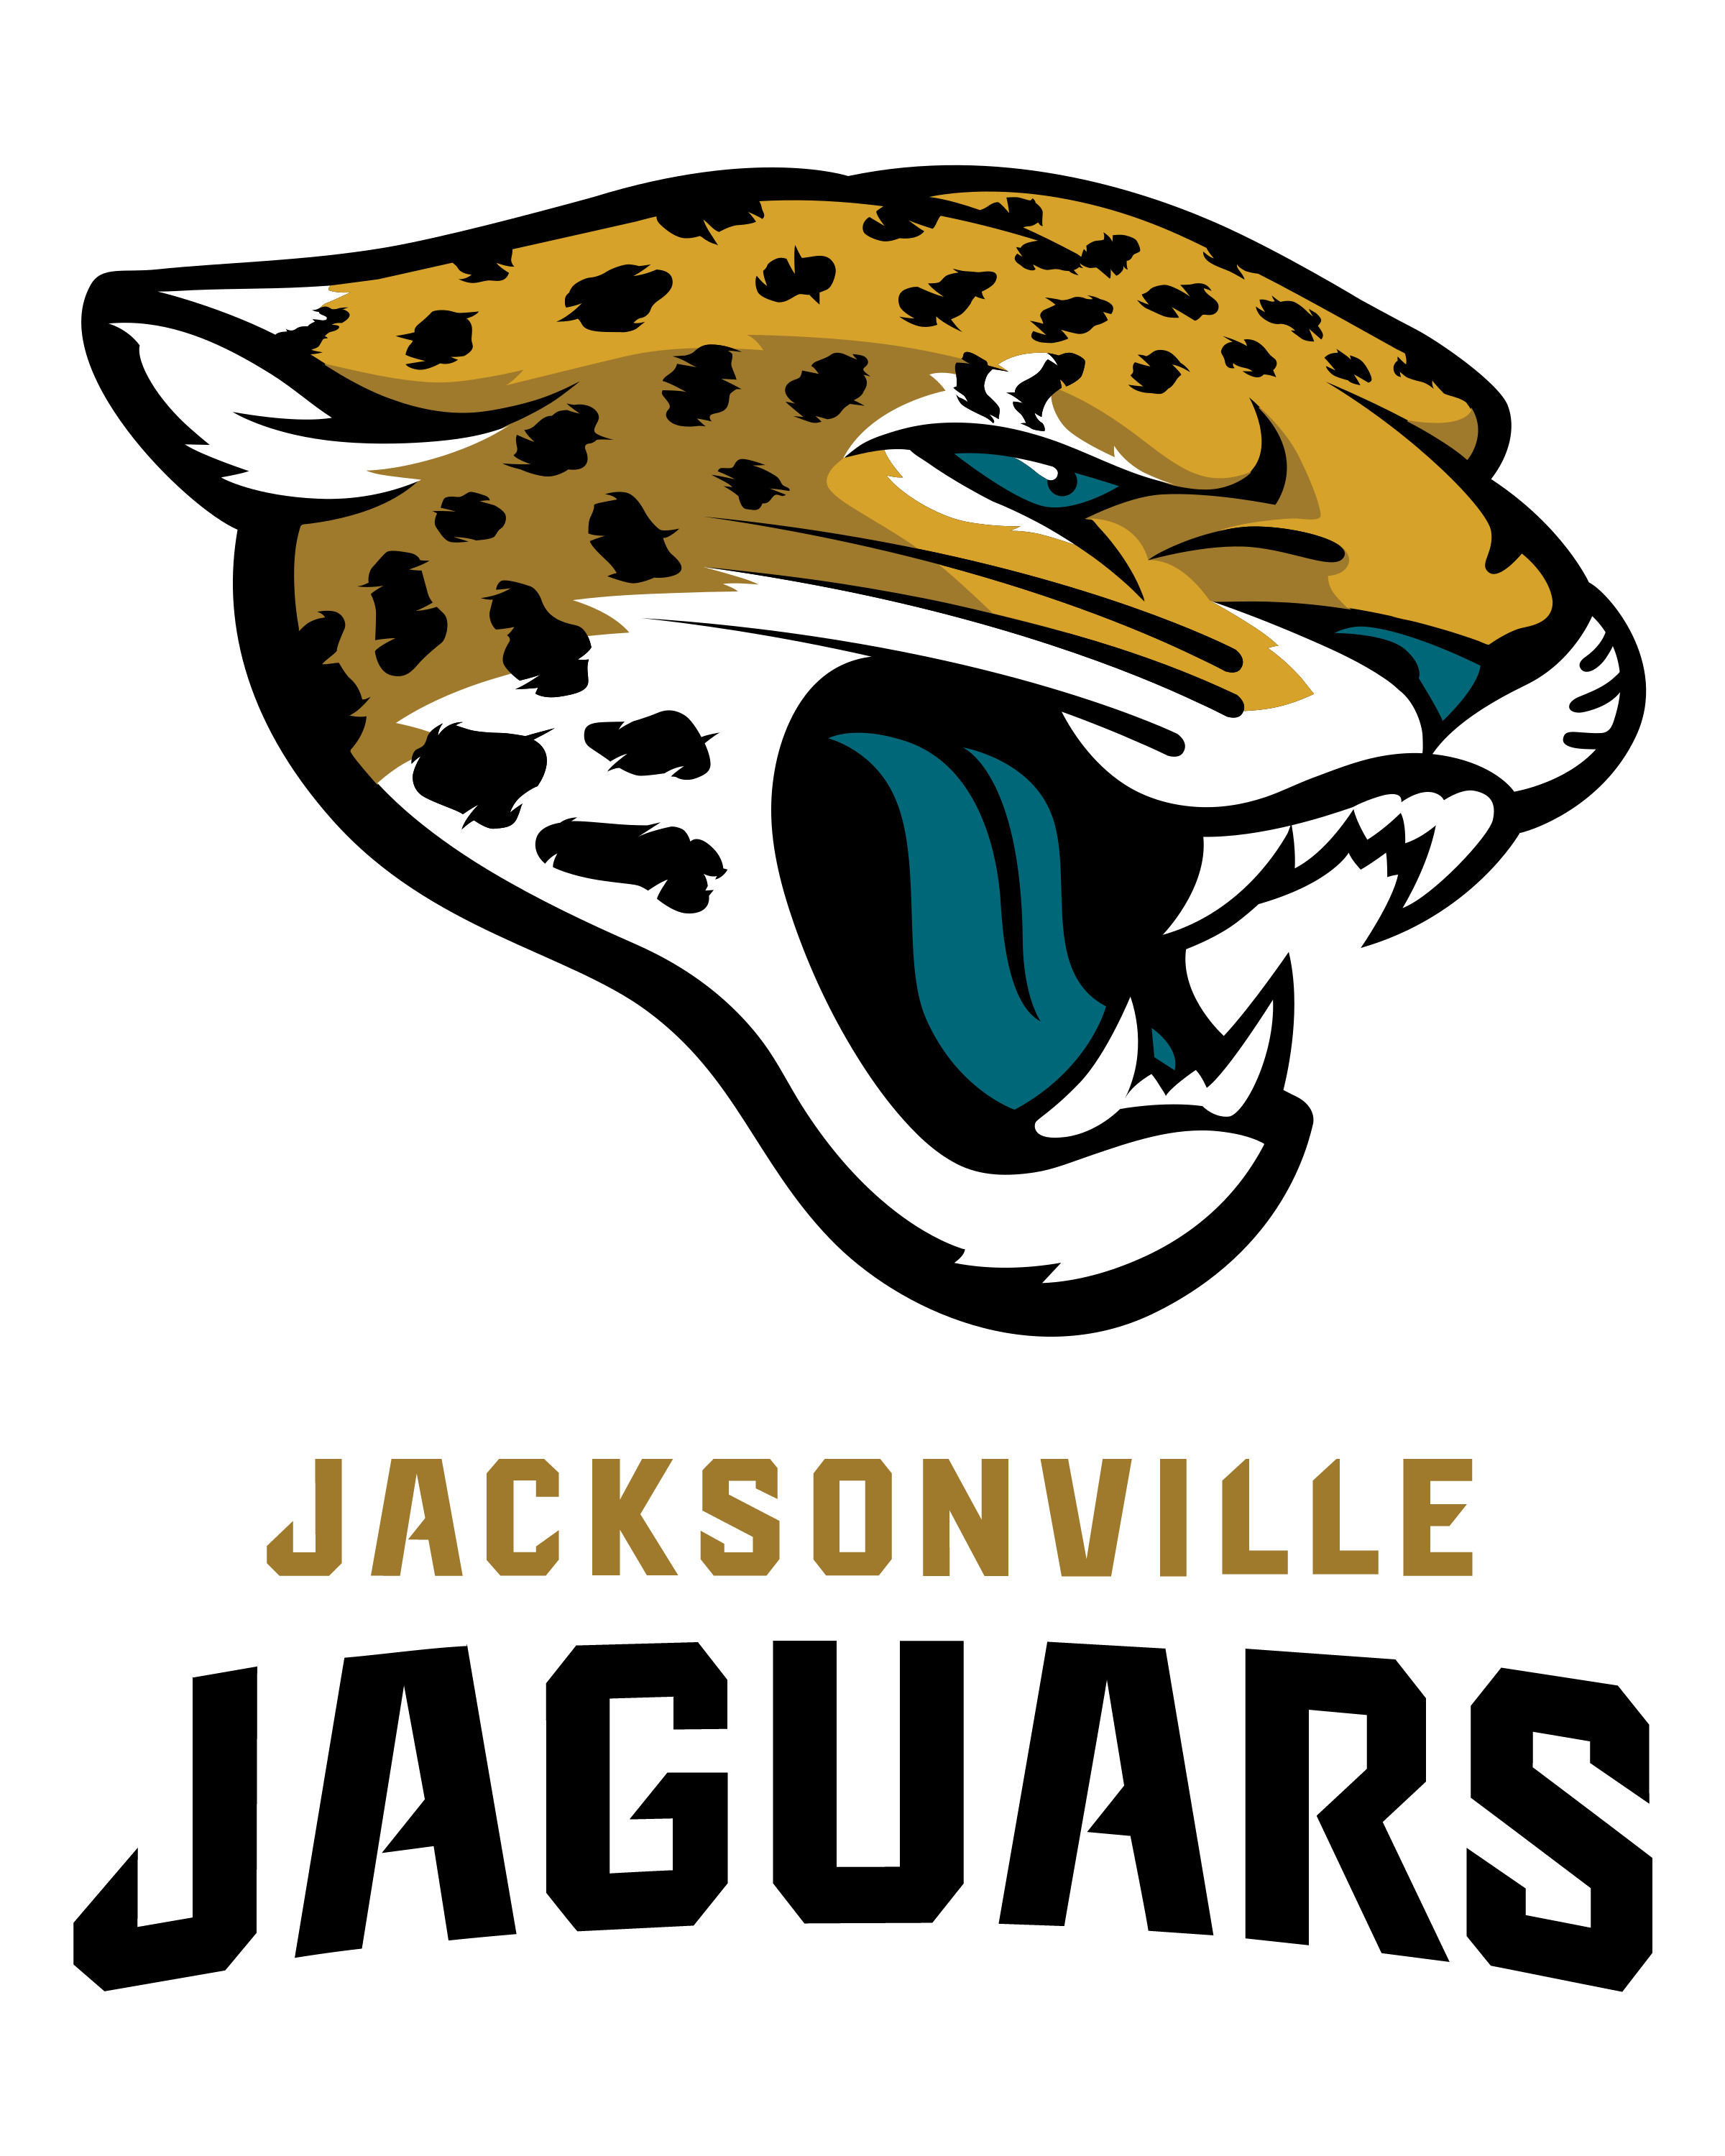 Jacksonville Jaguars Football Logo - Jacksonville Jaguars Logo PNG Transparent & SVG Vector - Freebie Supply